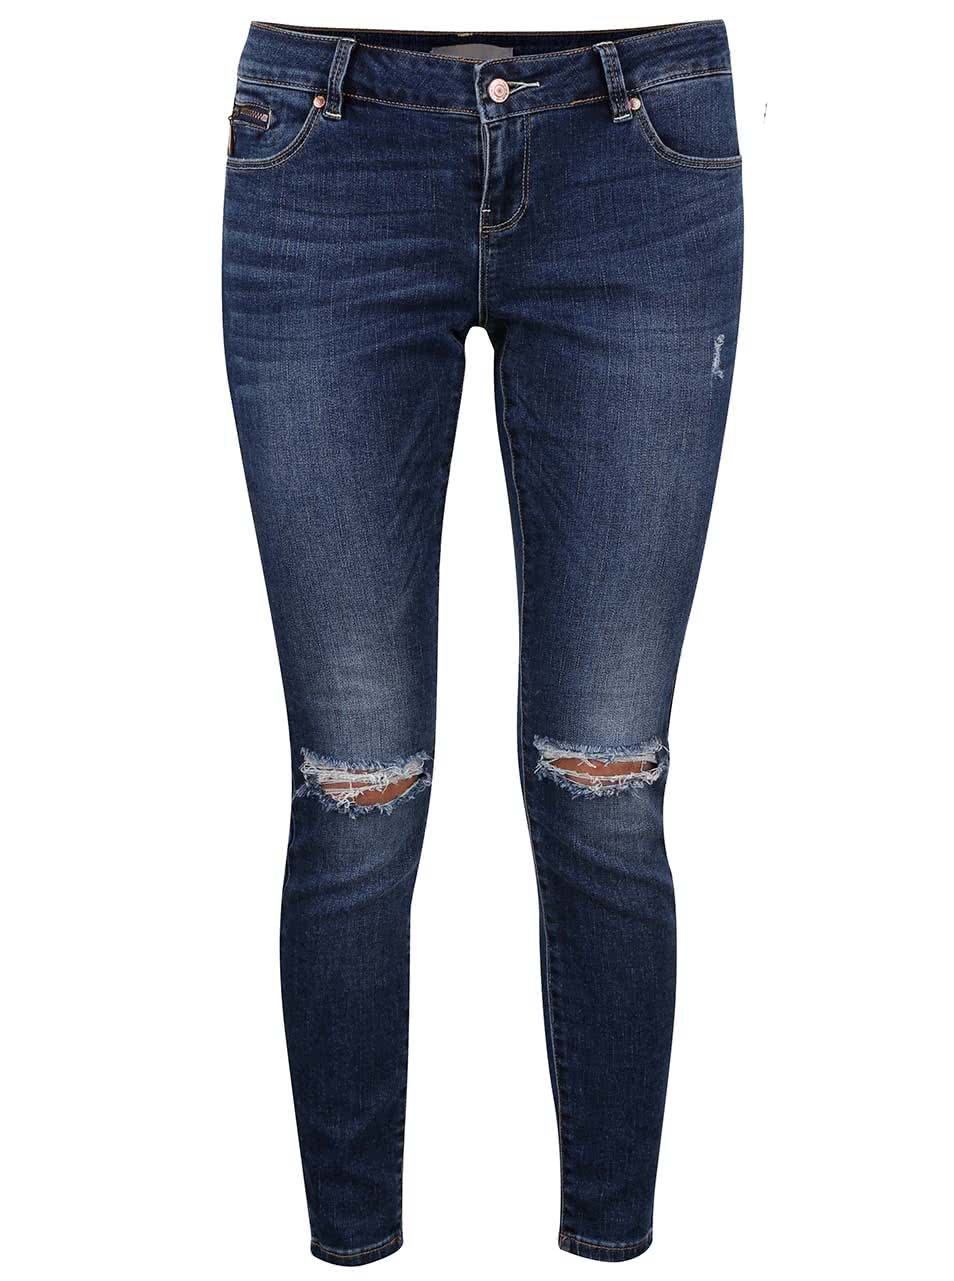 Tmavě modré džíny s dírami na kolenou Vero Moda Five